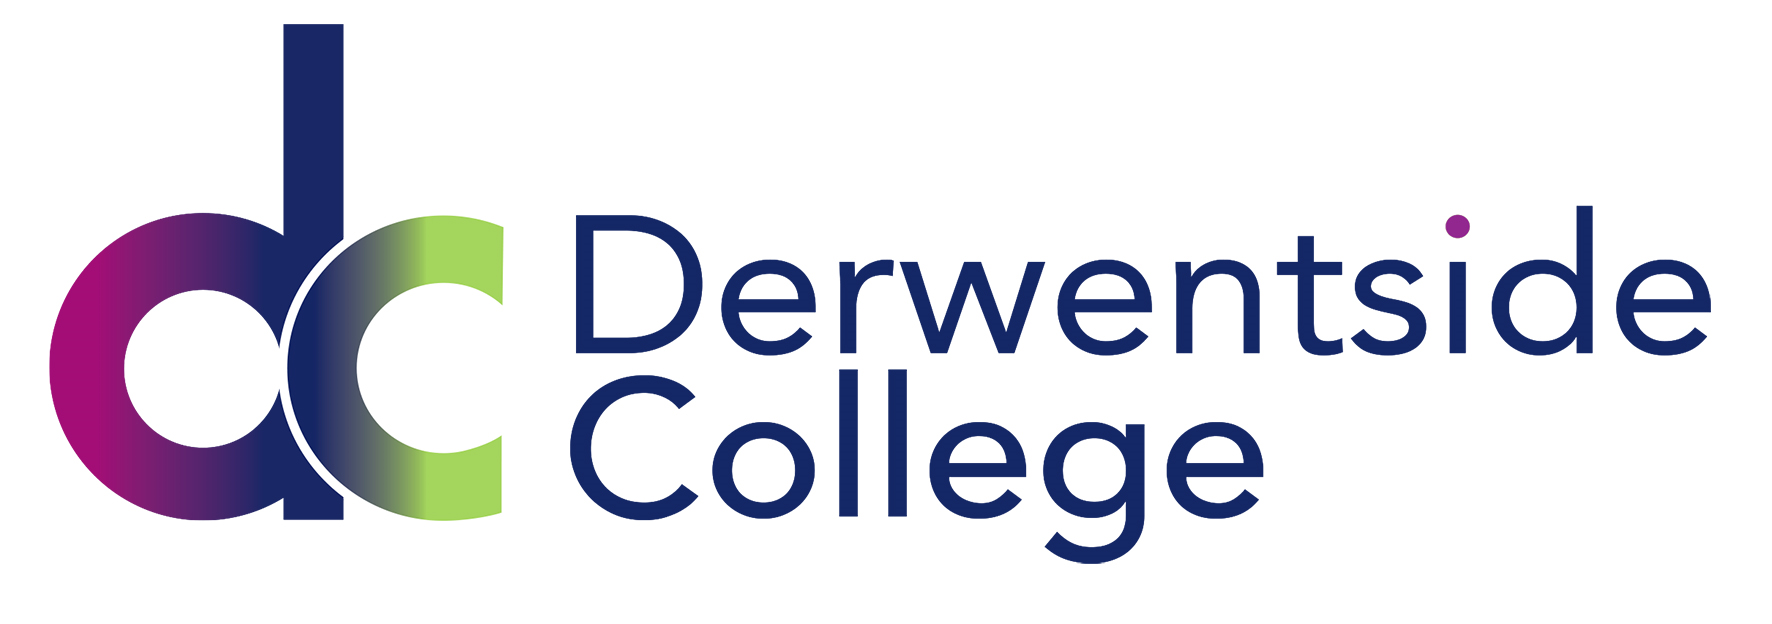 logo for Derwentside College